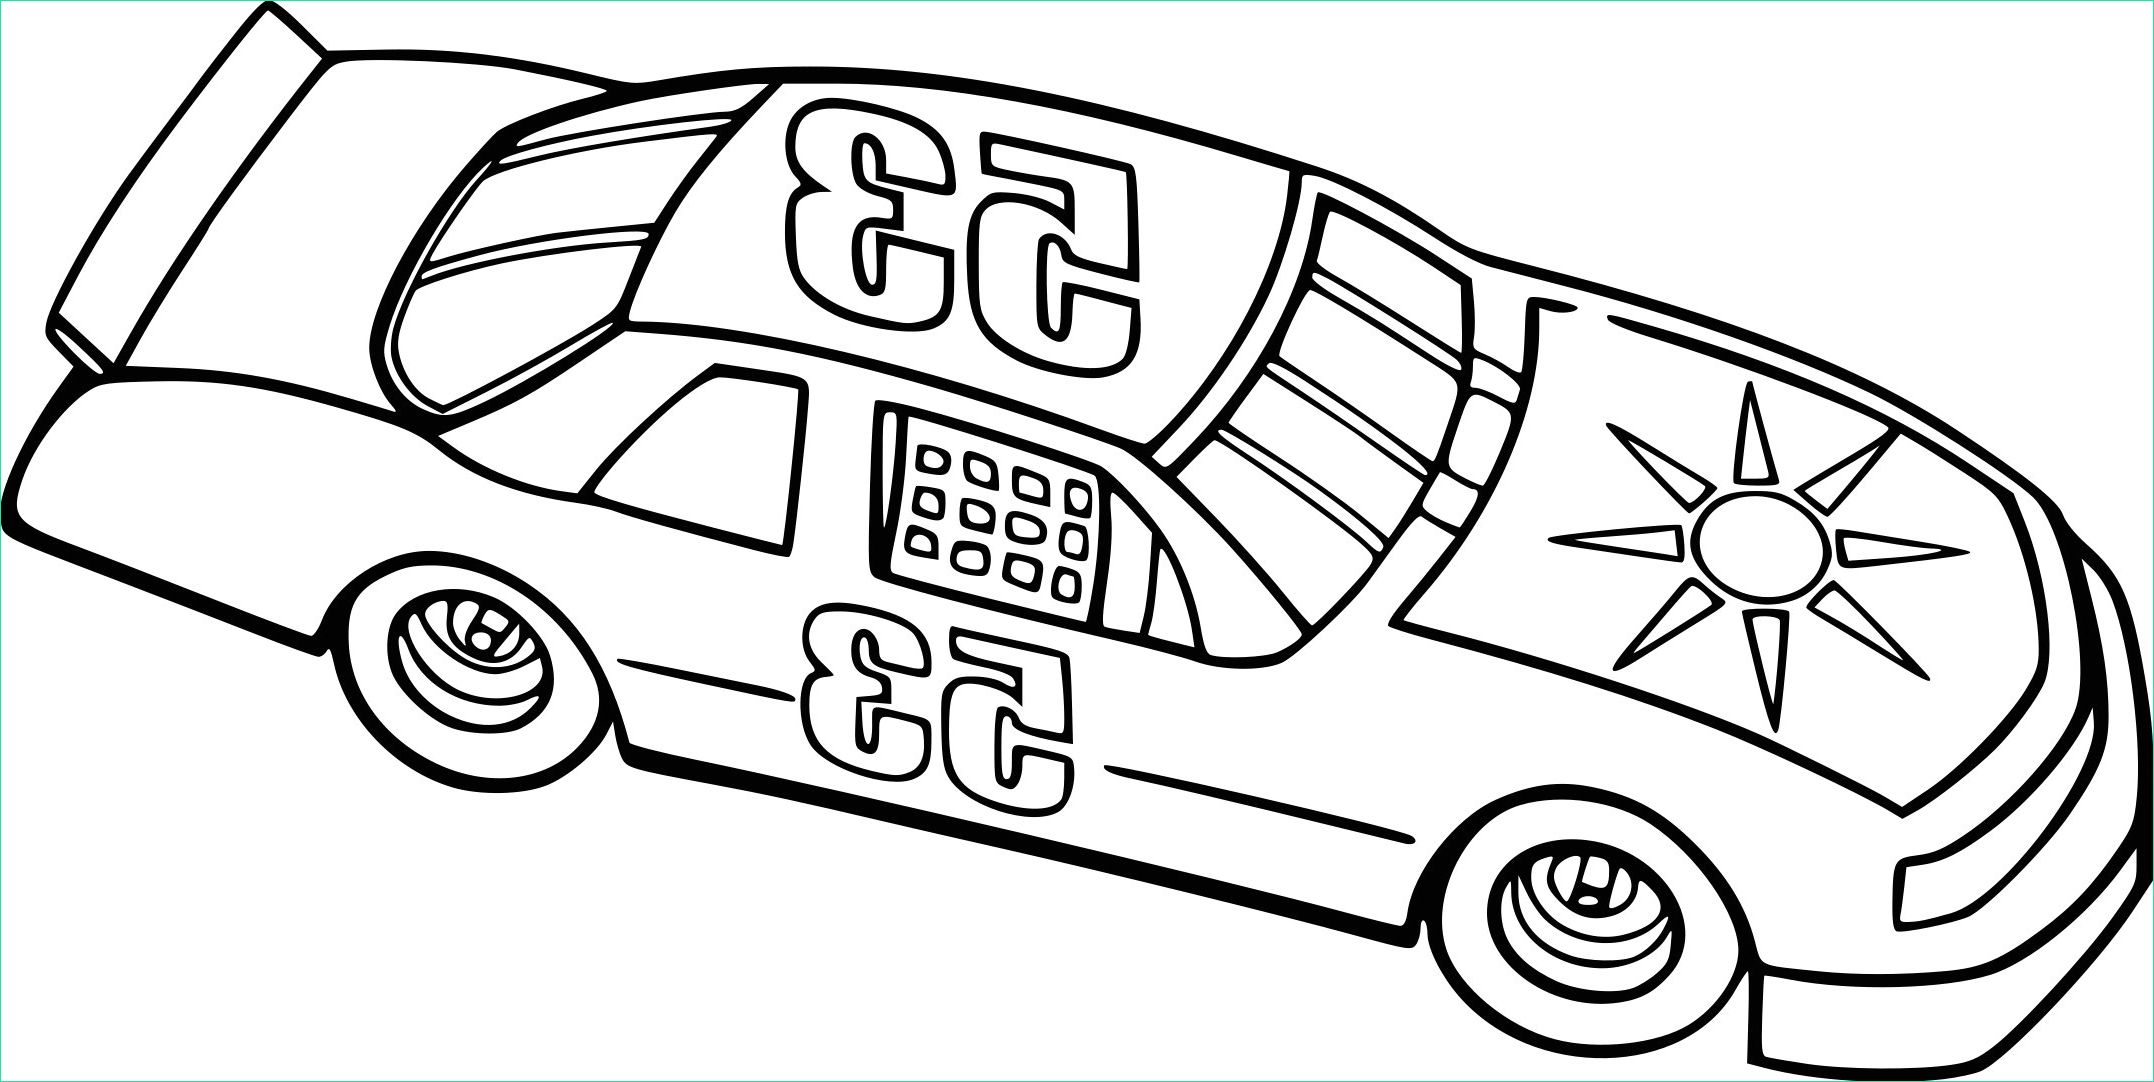 coloriage a imprimer gratuit voiture de course genial coloriage a imprimer de voiture de course